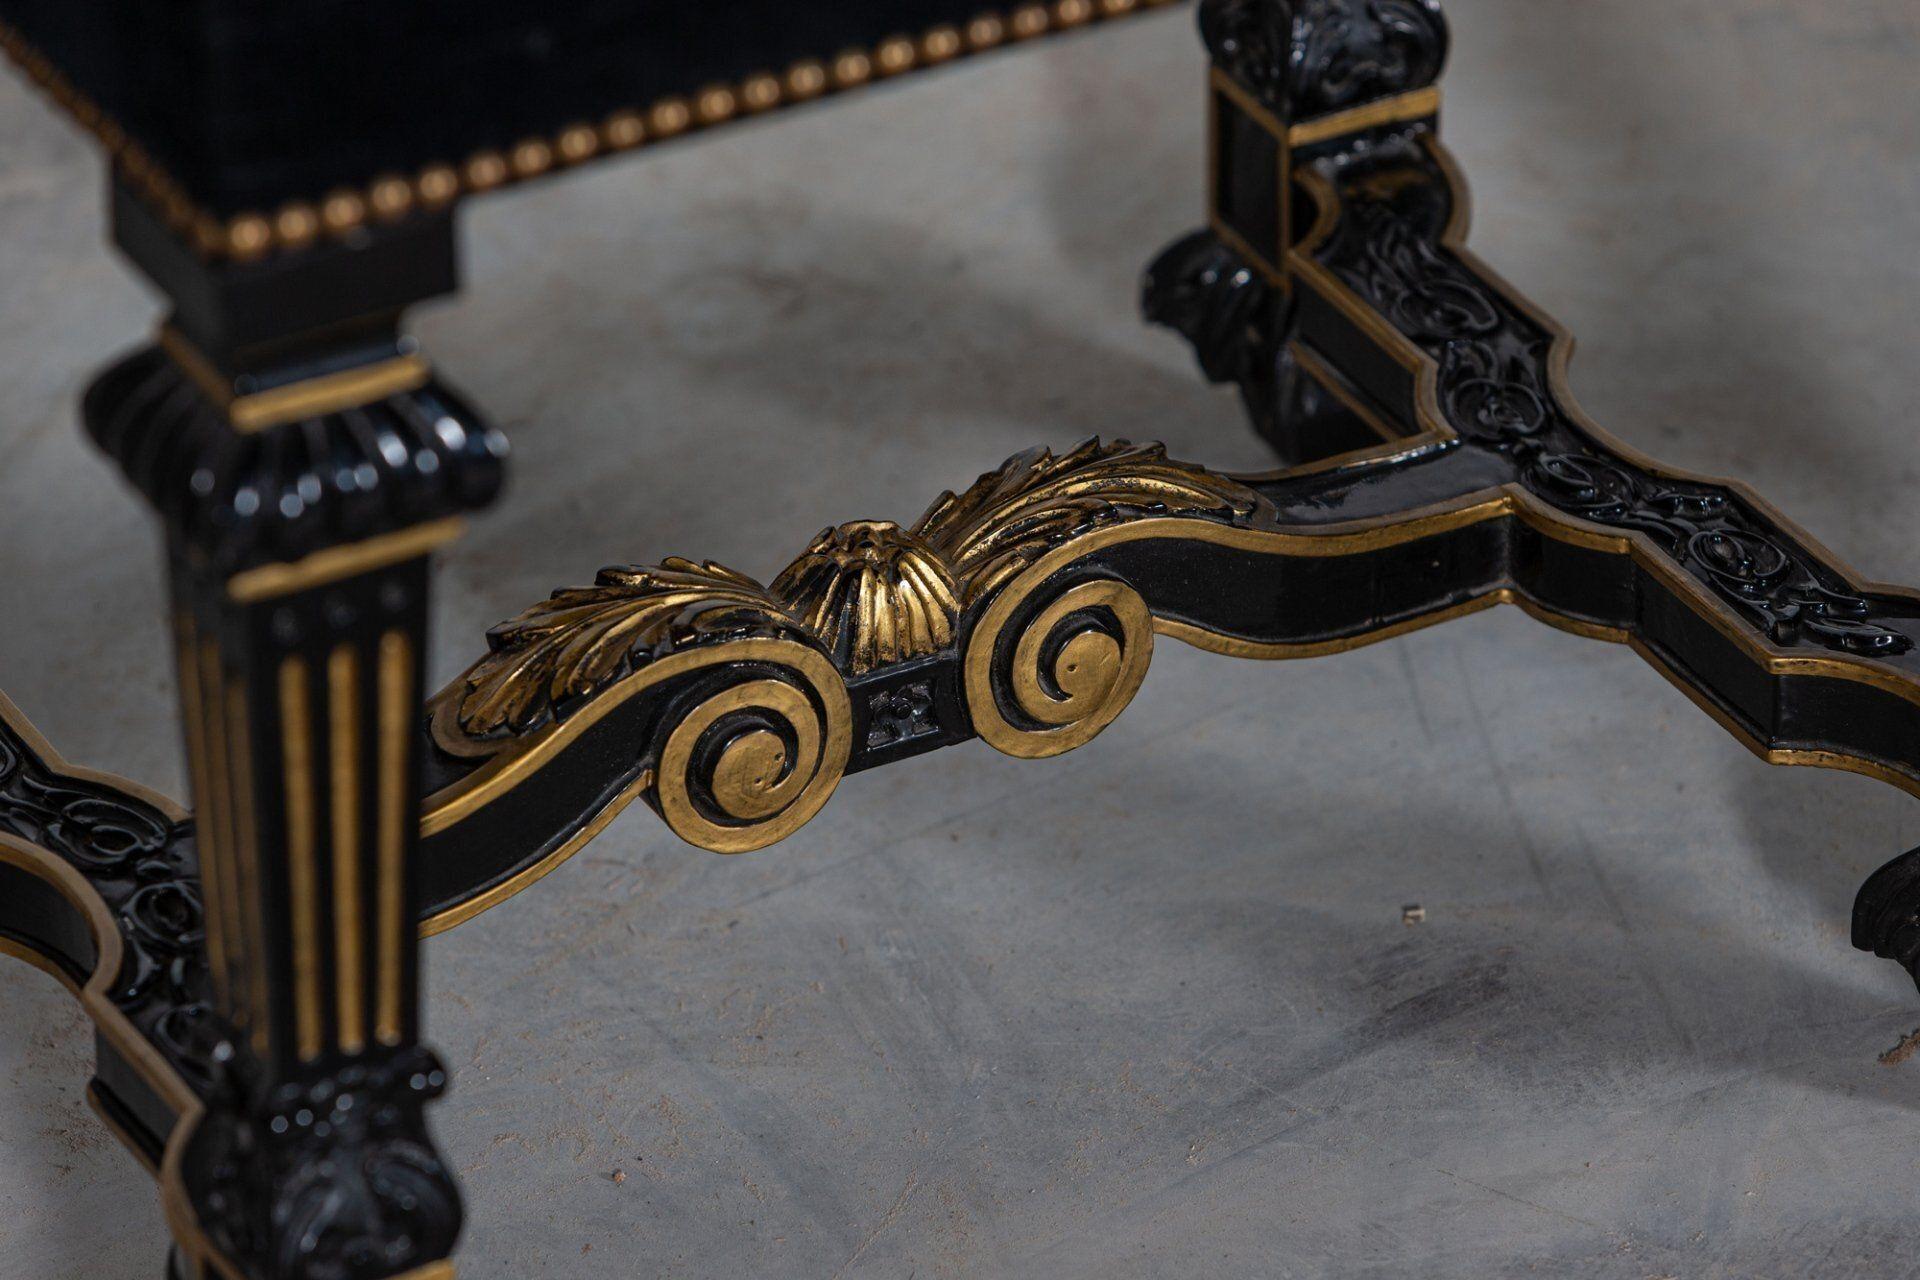 Vers 1870.
Paire de tabourets français du 19ème siècle en velours ébonisé et doré.
Des exemples exceptionnels.
Sku 1131
Mesures : L52 x D40 x H62cm.